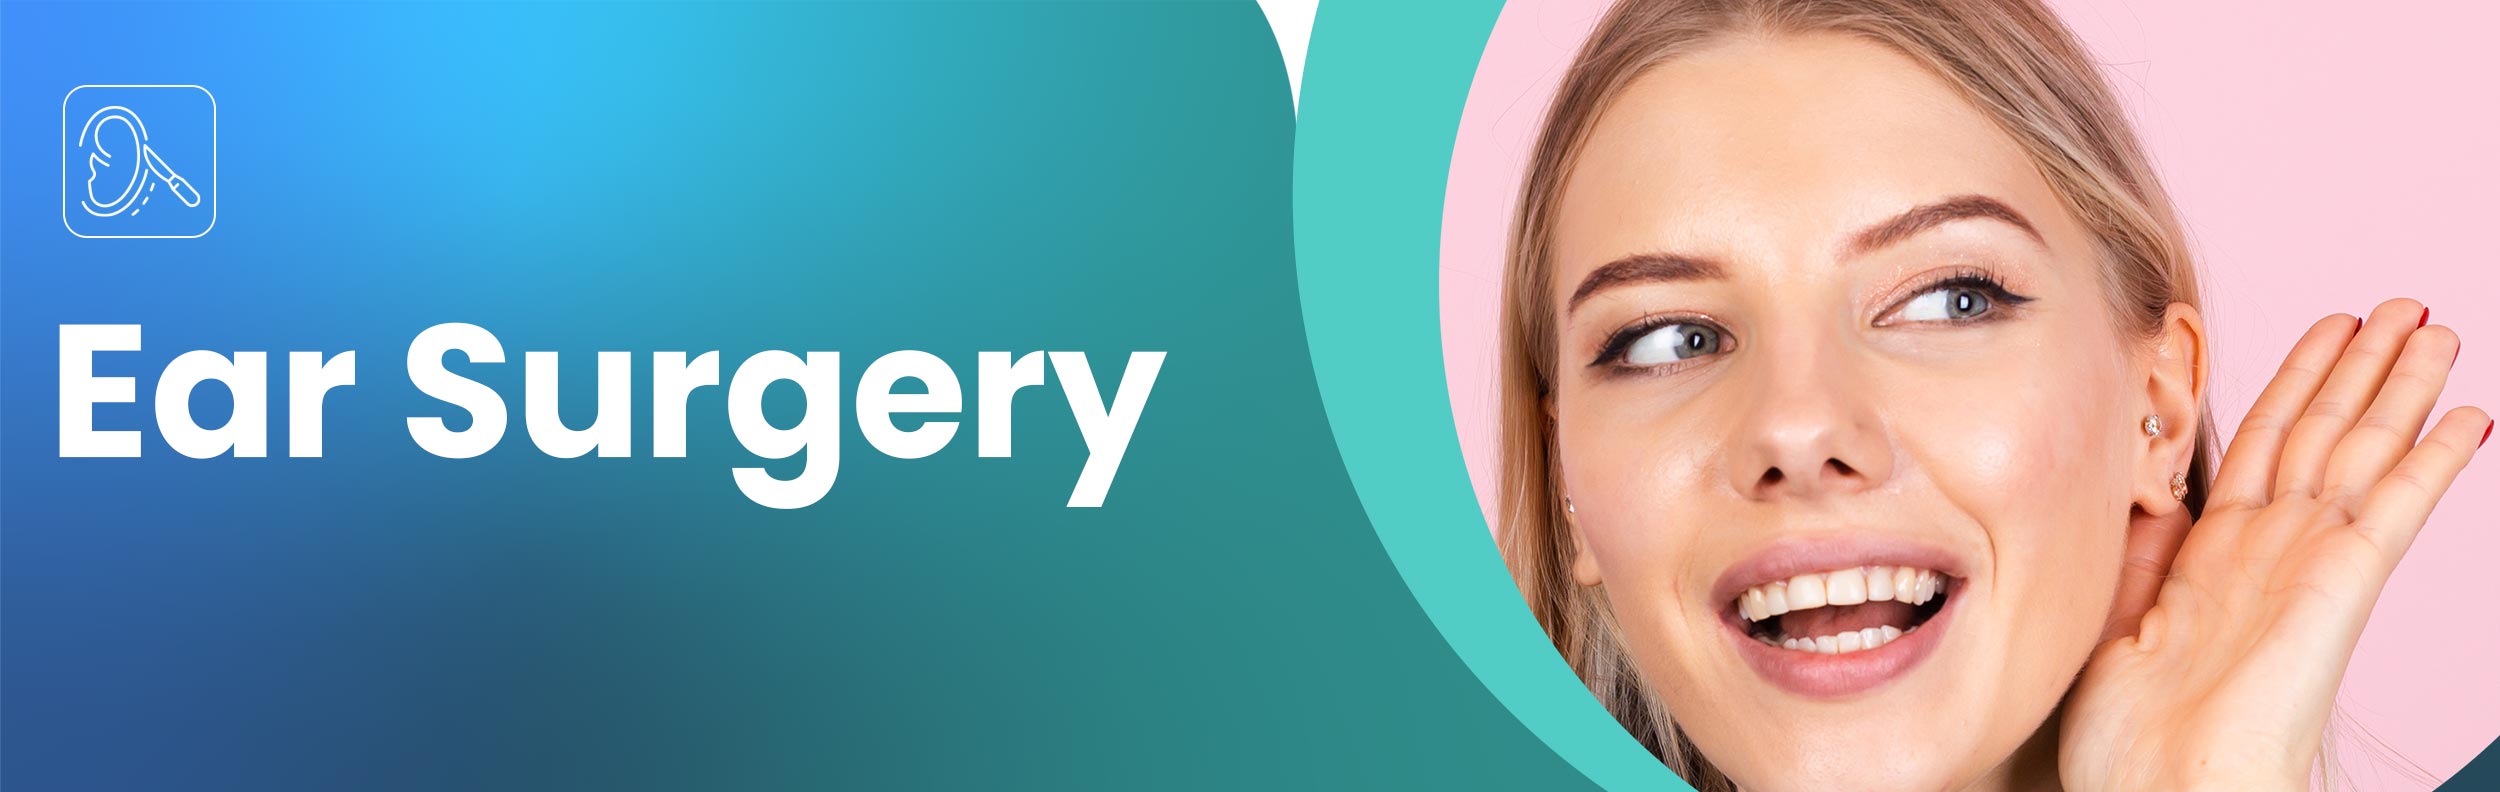 ear-surgery-otoplasty